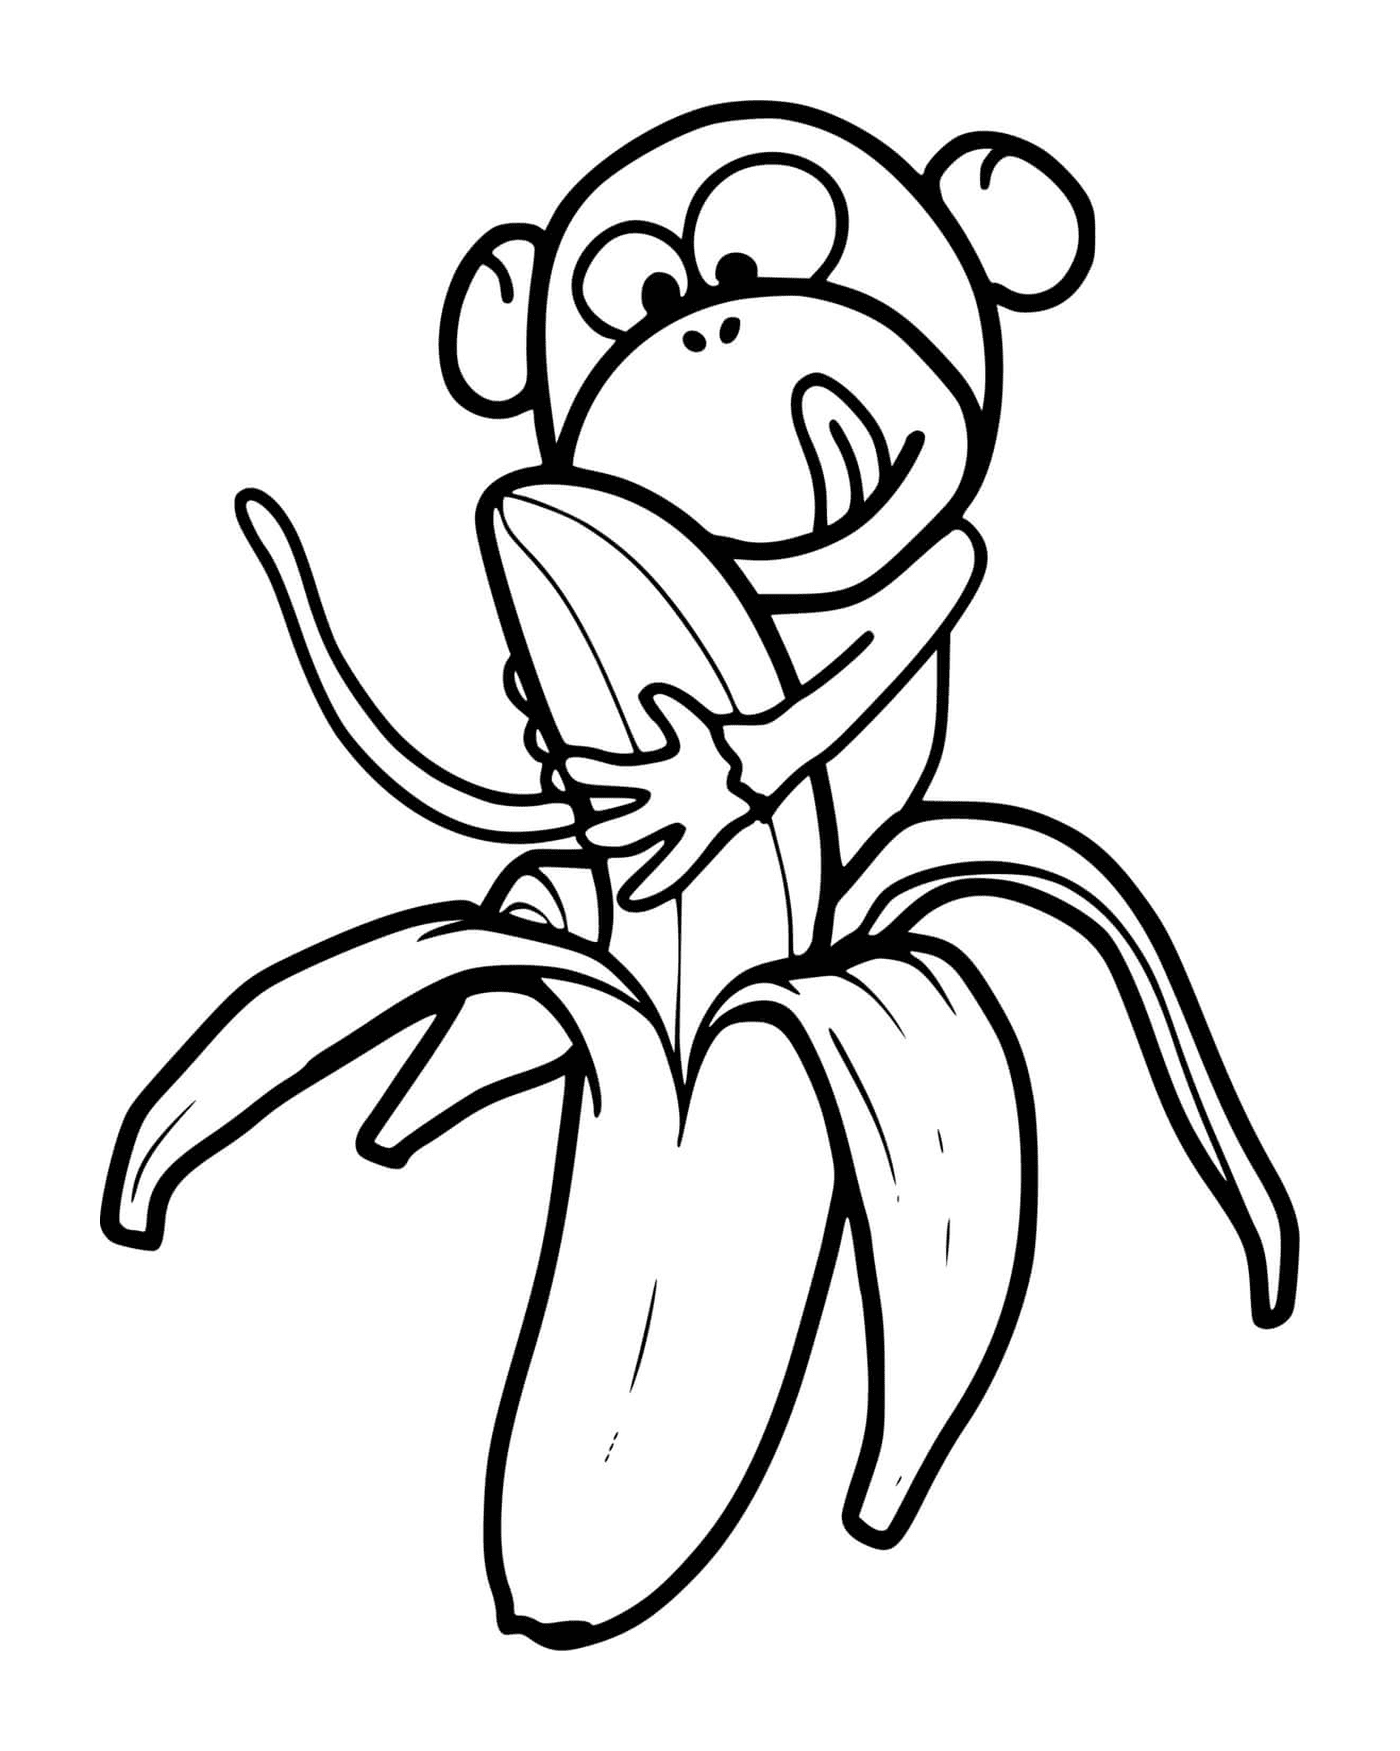  A monkey eats a banana 